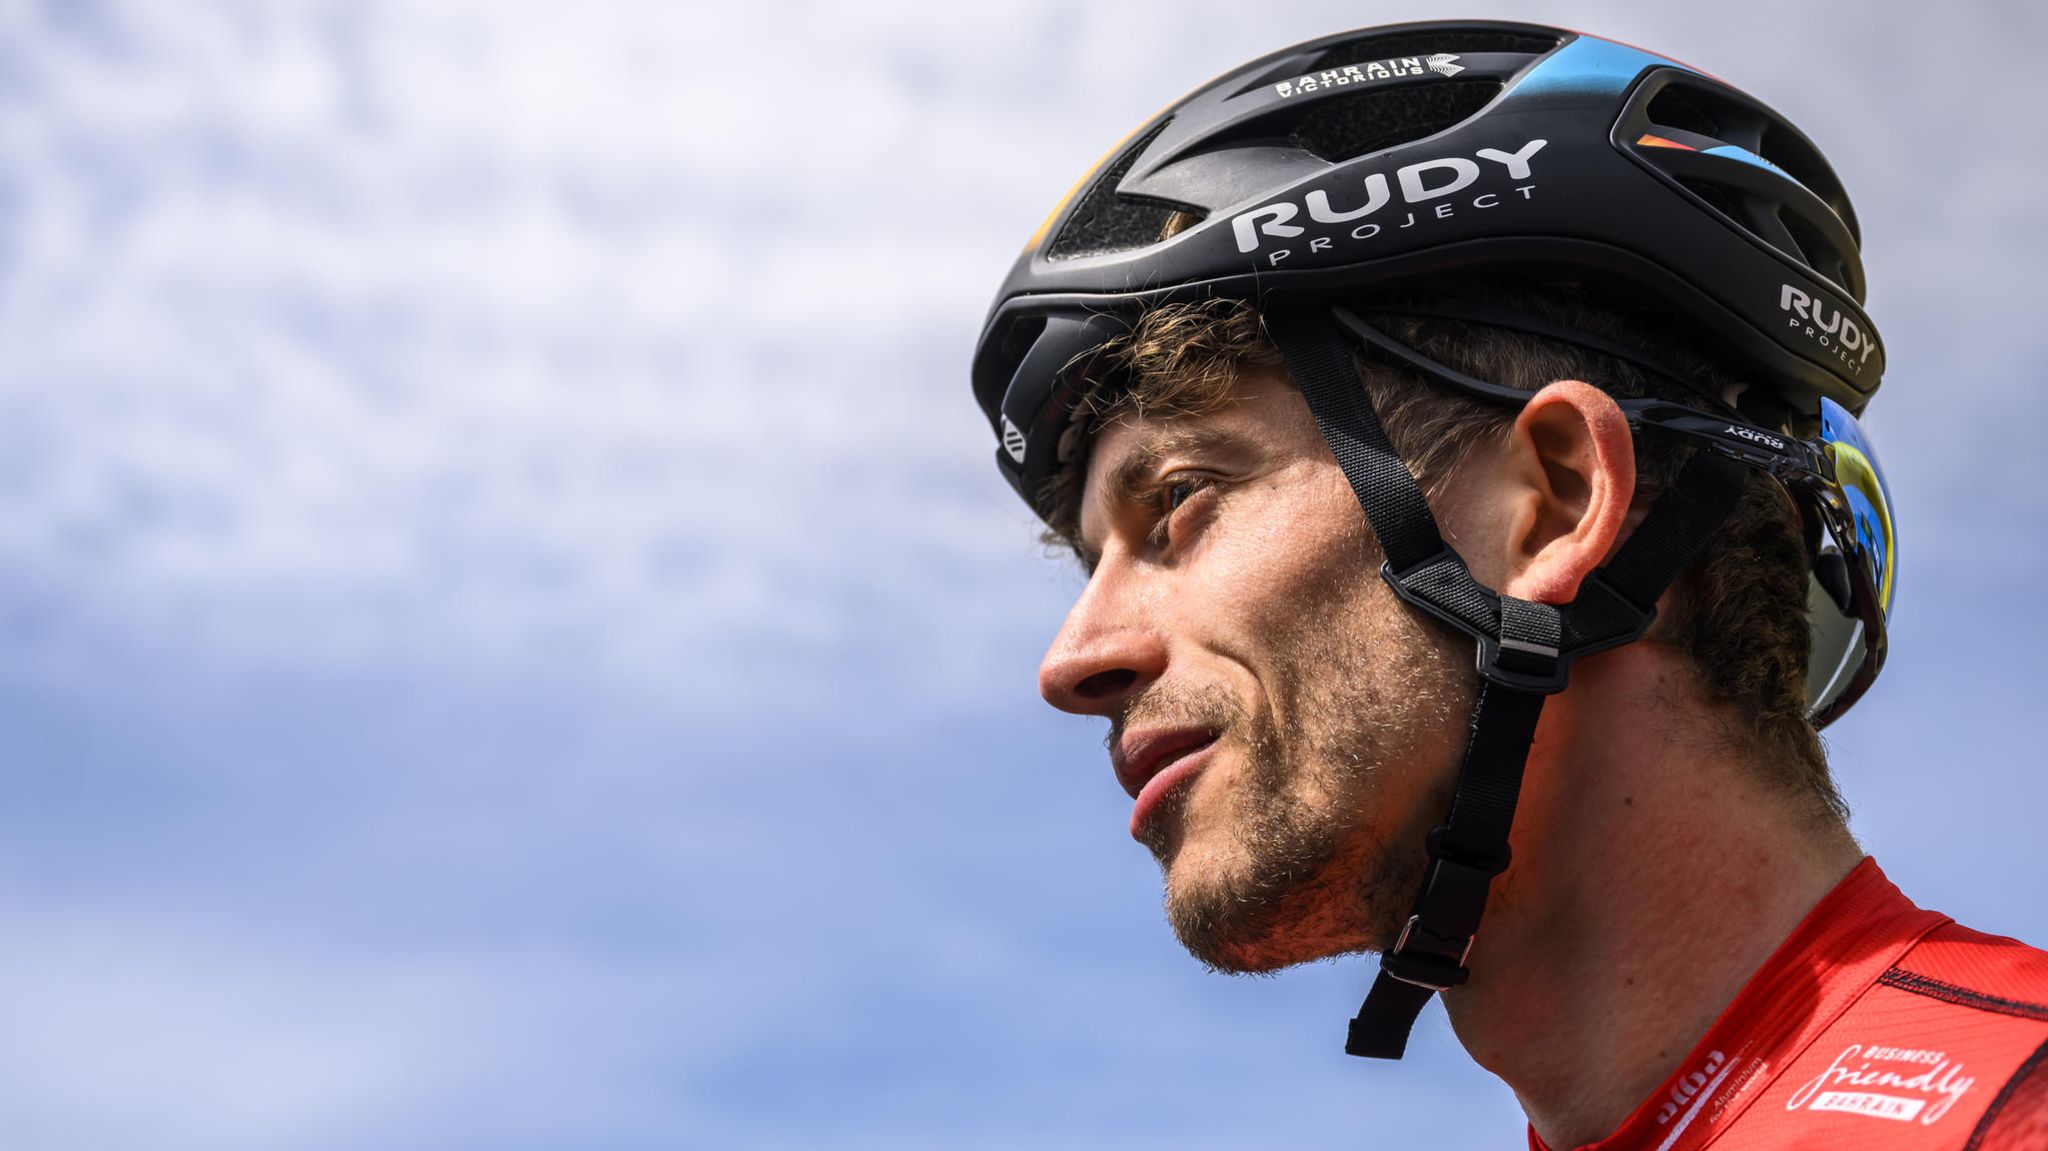 Tödlicher Sturz bei Tour de Suisse Radwelt trauert um Gino Mäder STERN.de